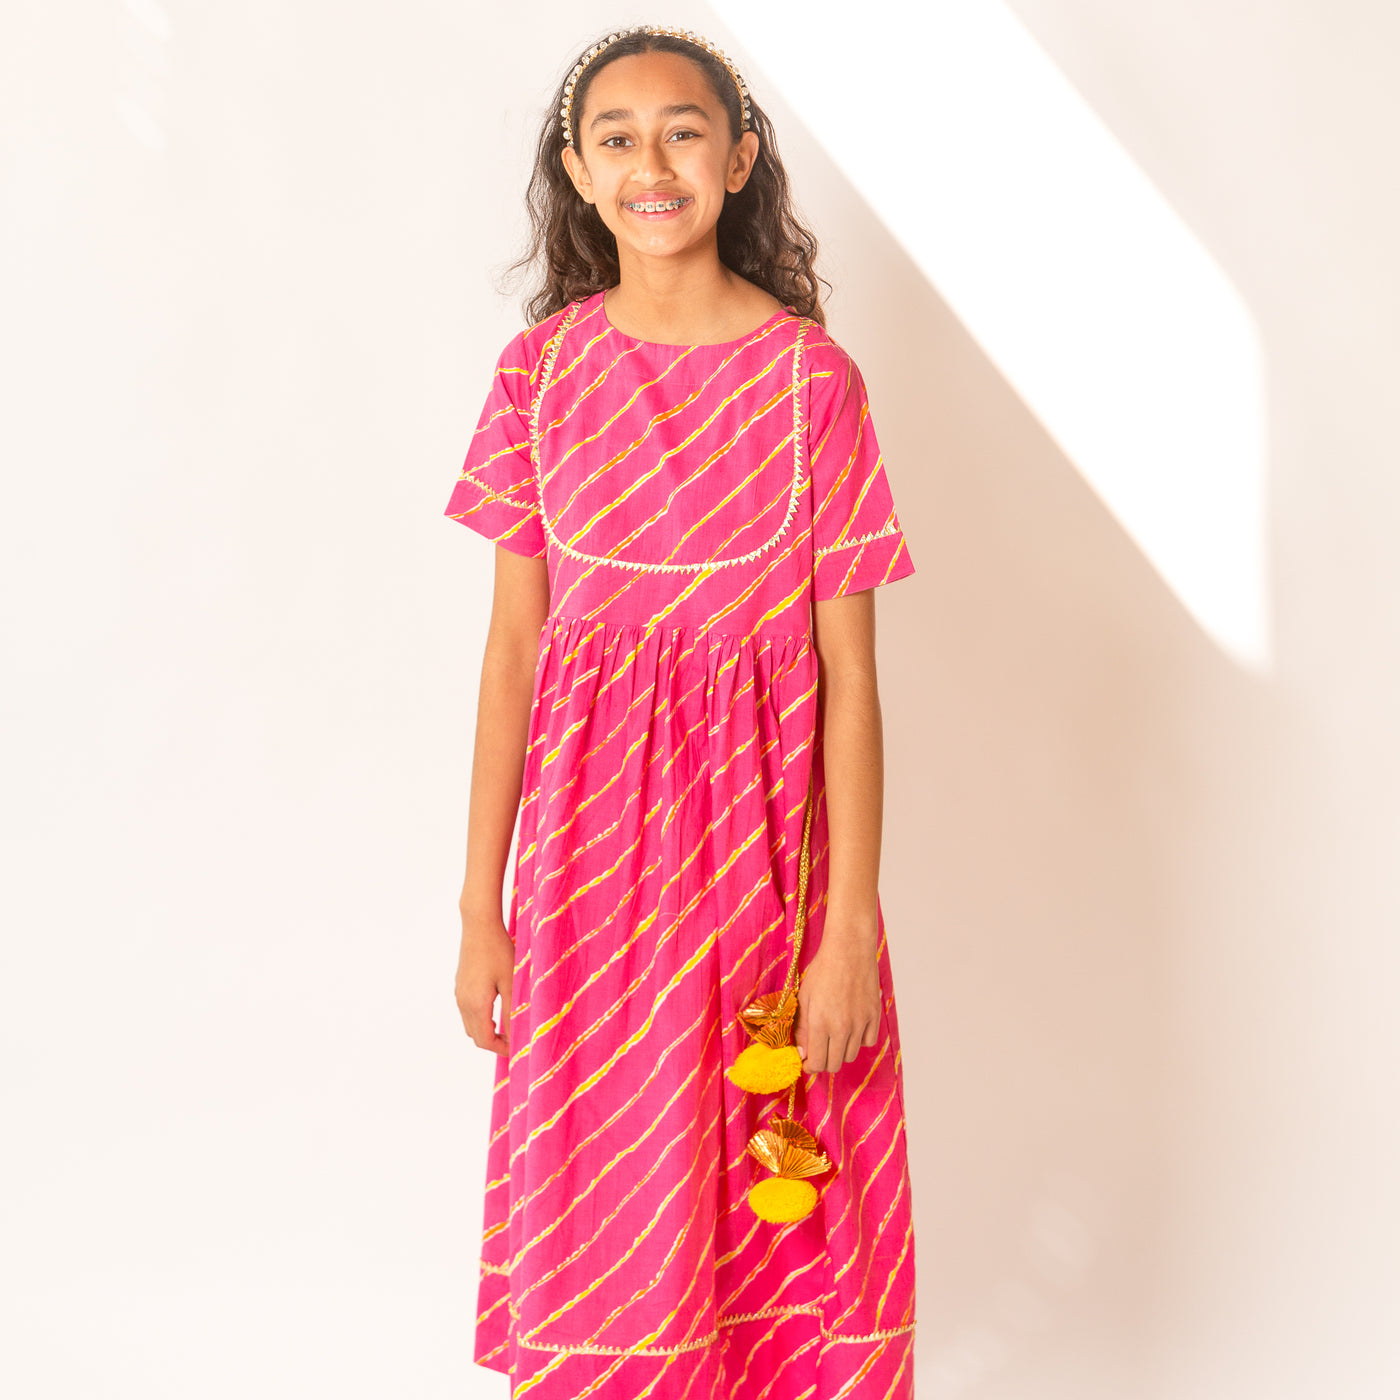 Saachi - Girls Pink & Yellow Leheriya Ankle Length Ethnic Gota Dress with Pom Pom